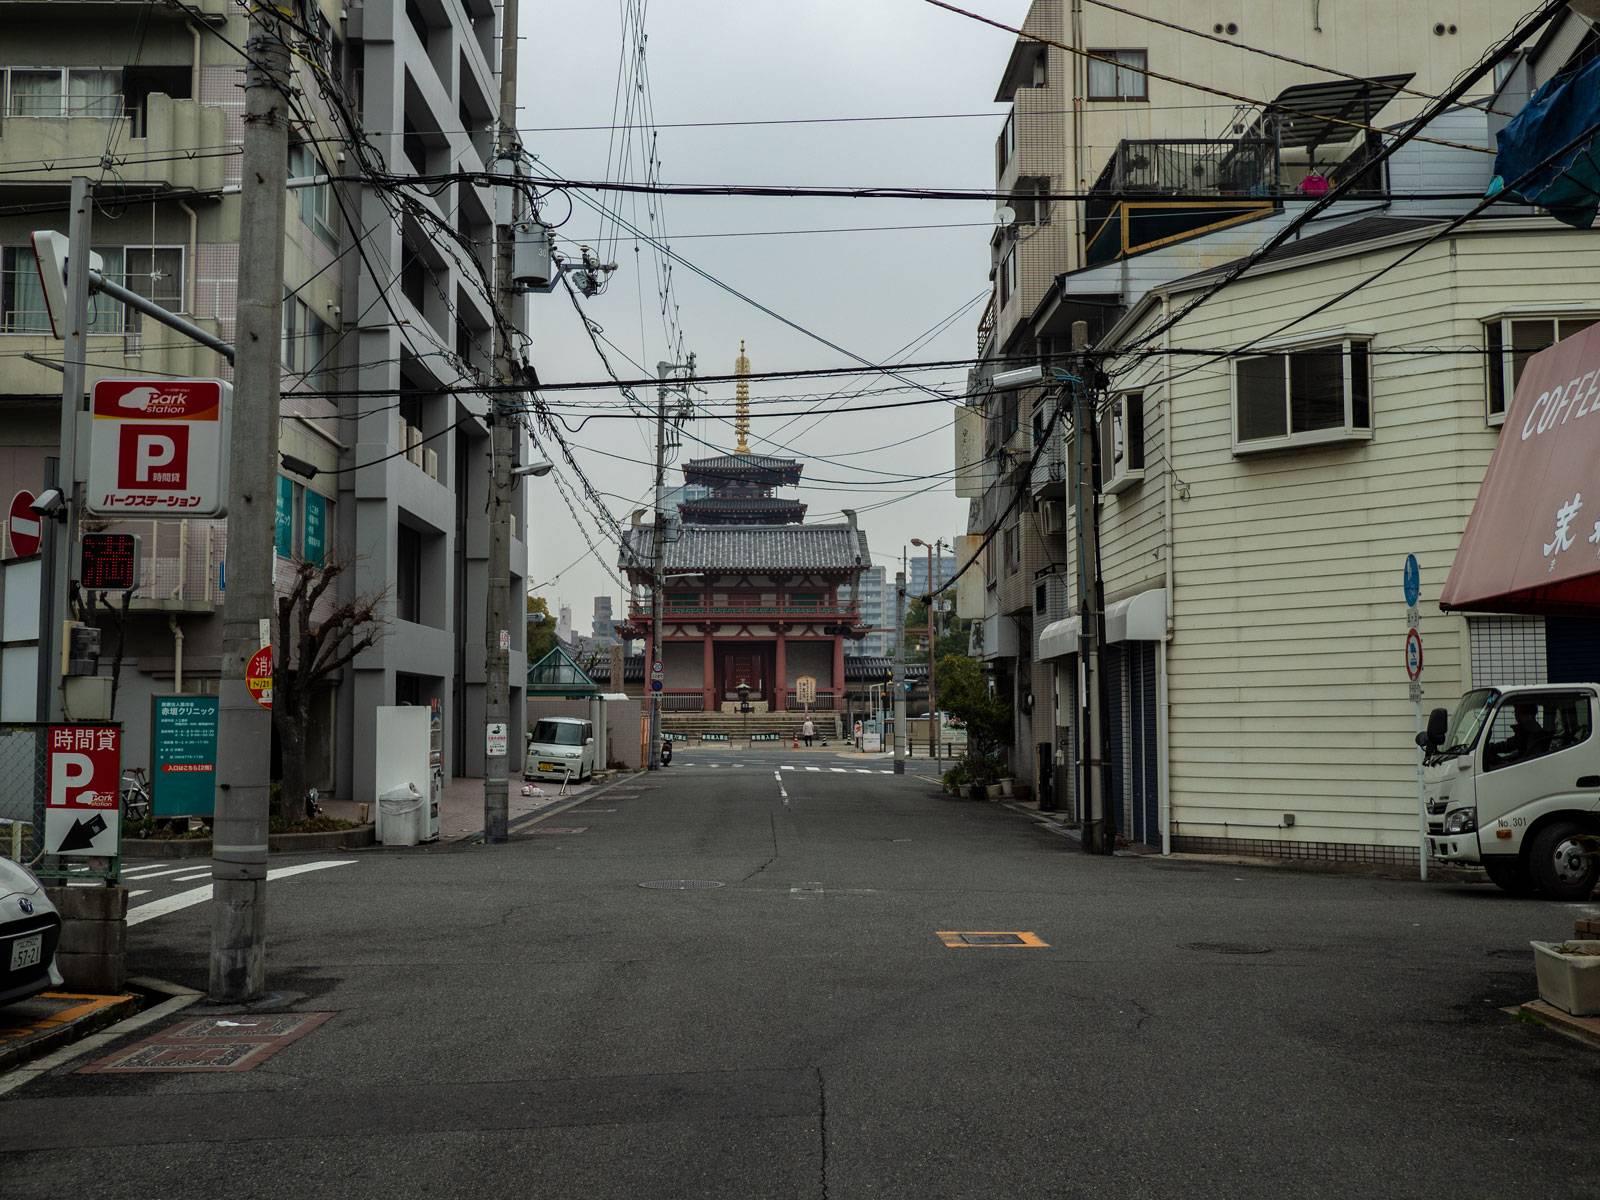 Shitennō-ji in the distance